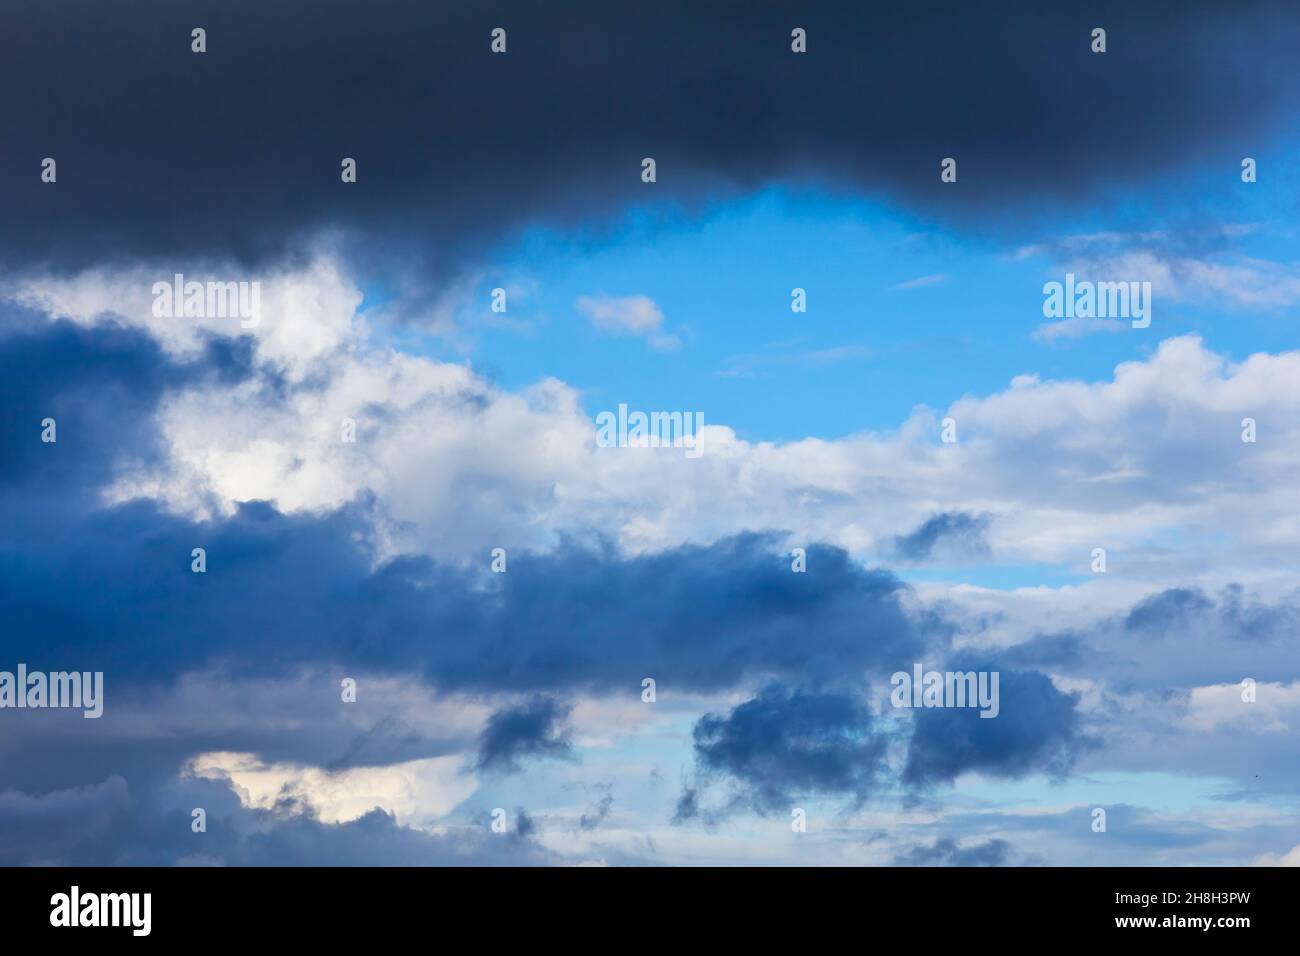 Nubes oscuras y luminosas antes de una tormenta de verano. Textura de fondo de concepto de atmósfera peligrosa. Foto de stock